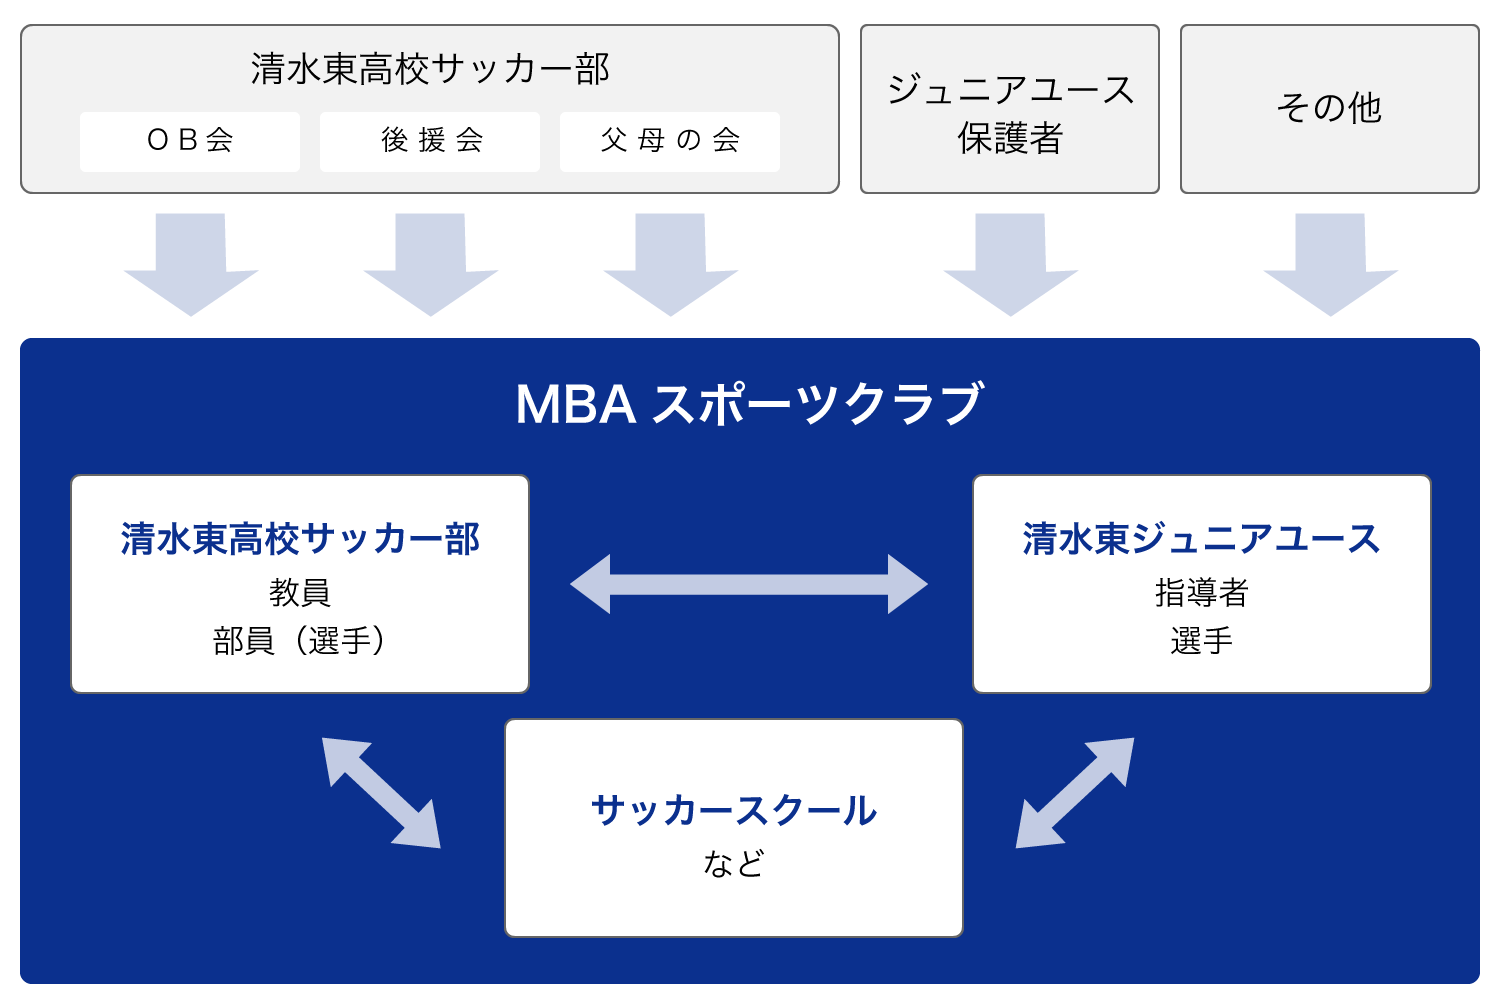 MBAスポーツクラブ組織図